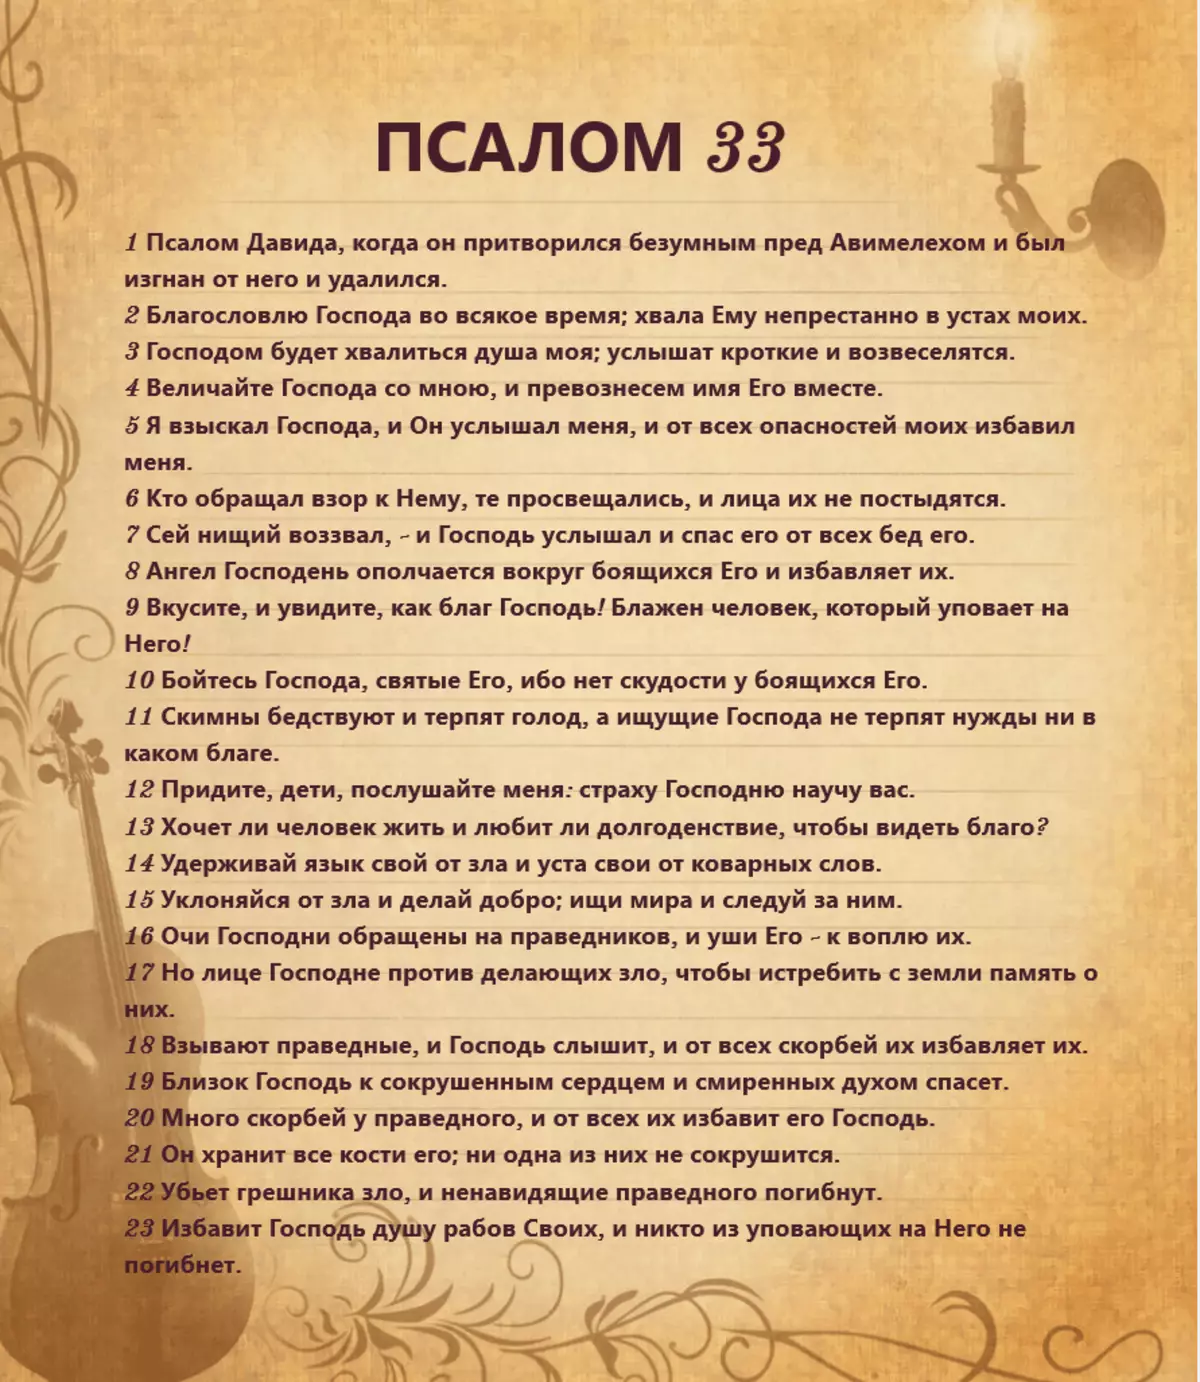 시편 33 : 러시아어로기도 텍스트, 읽는 방법 4545_3